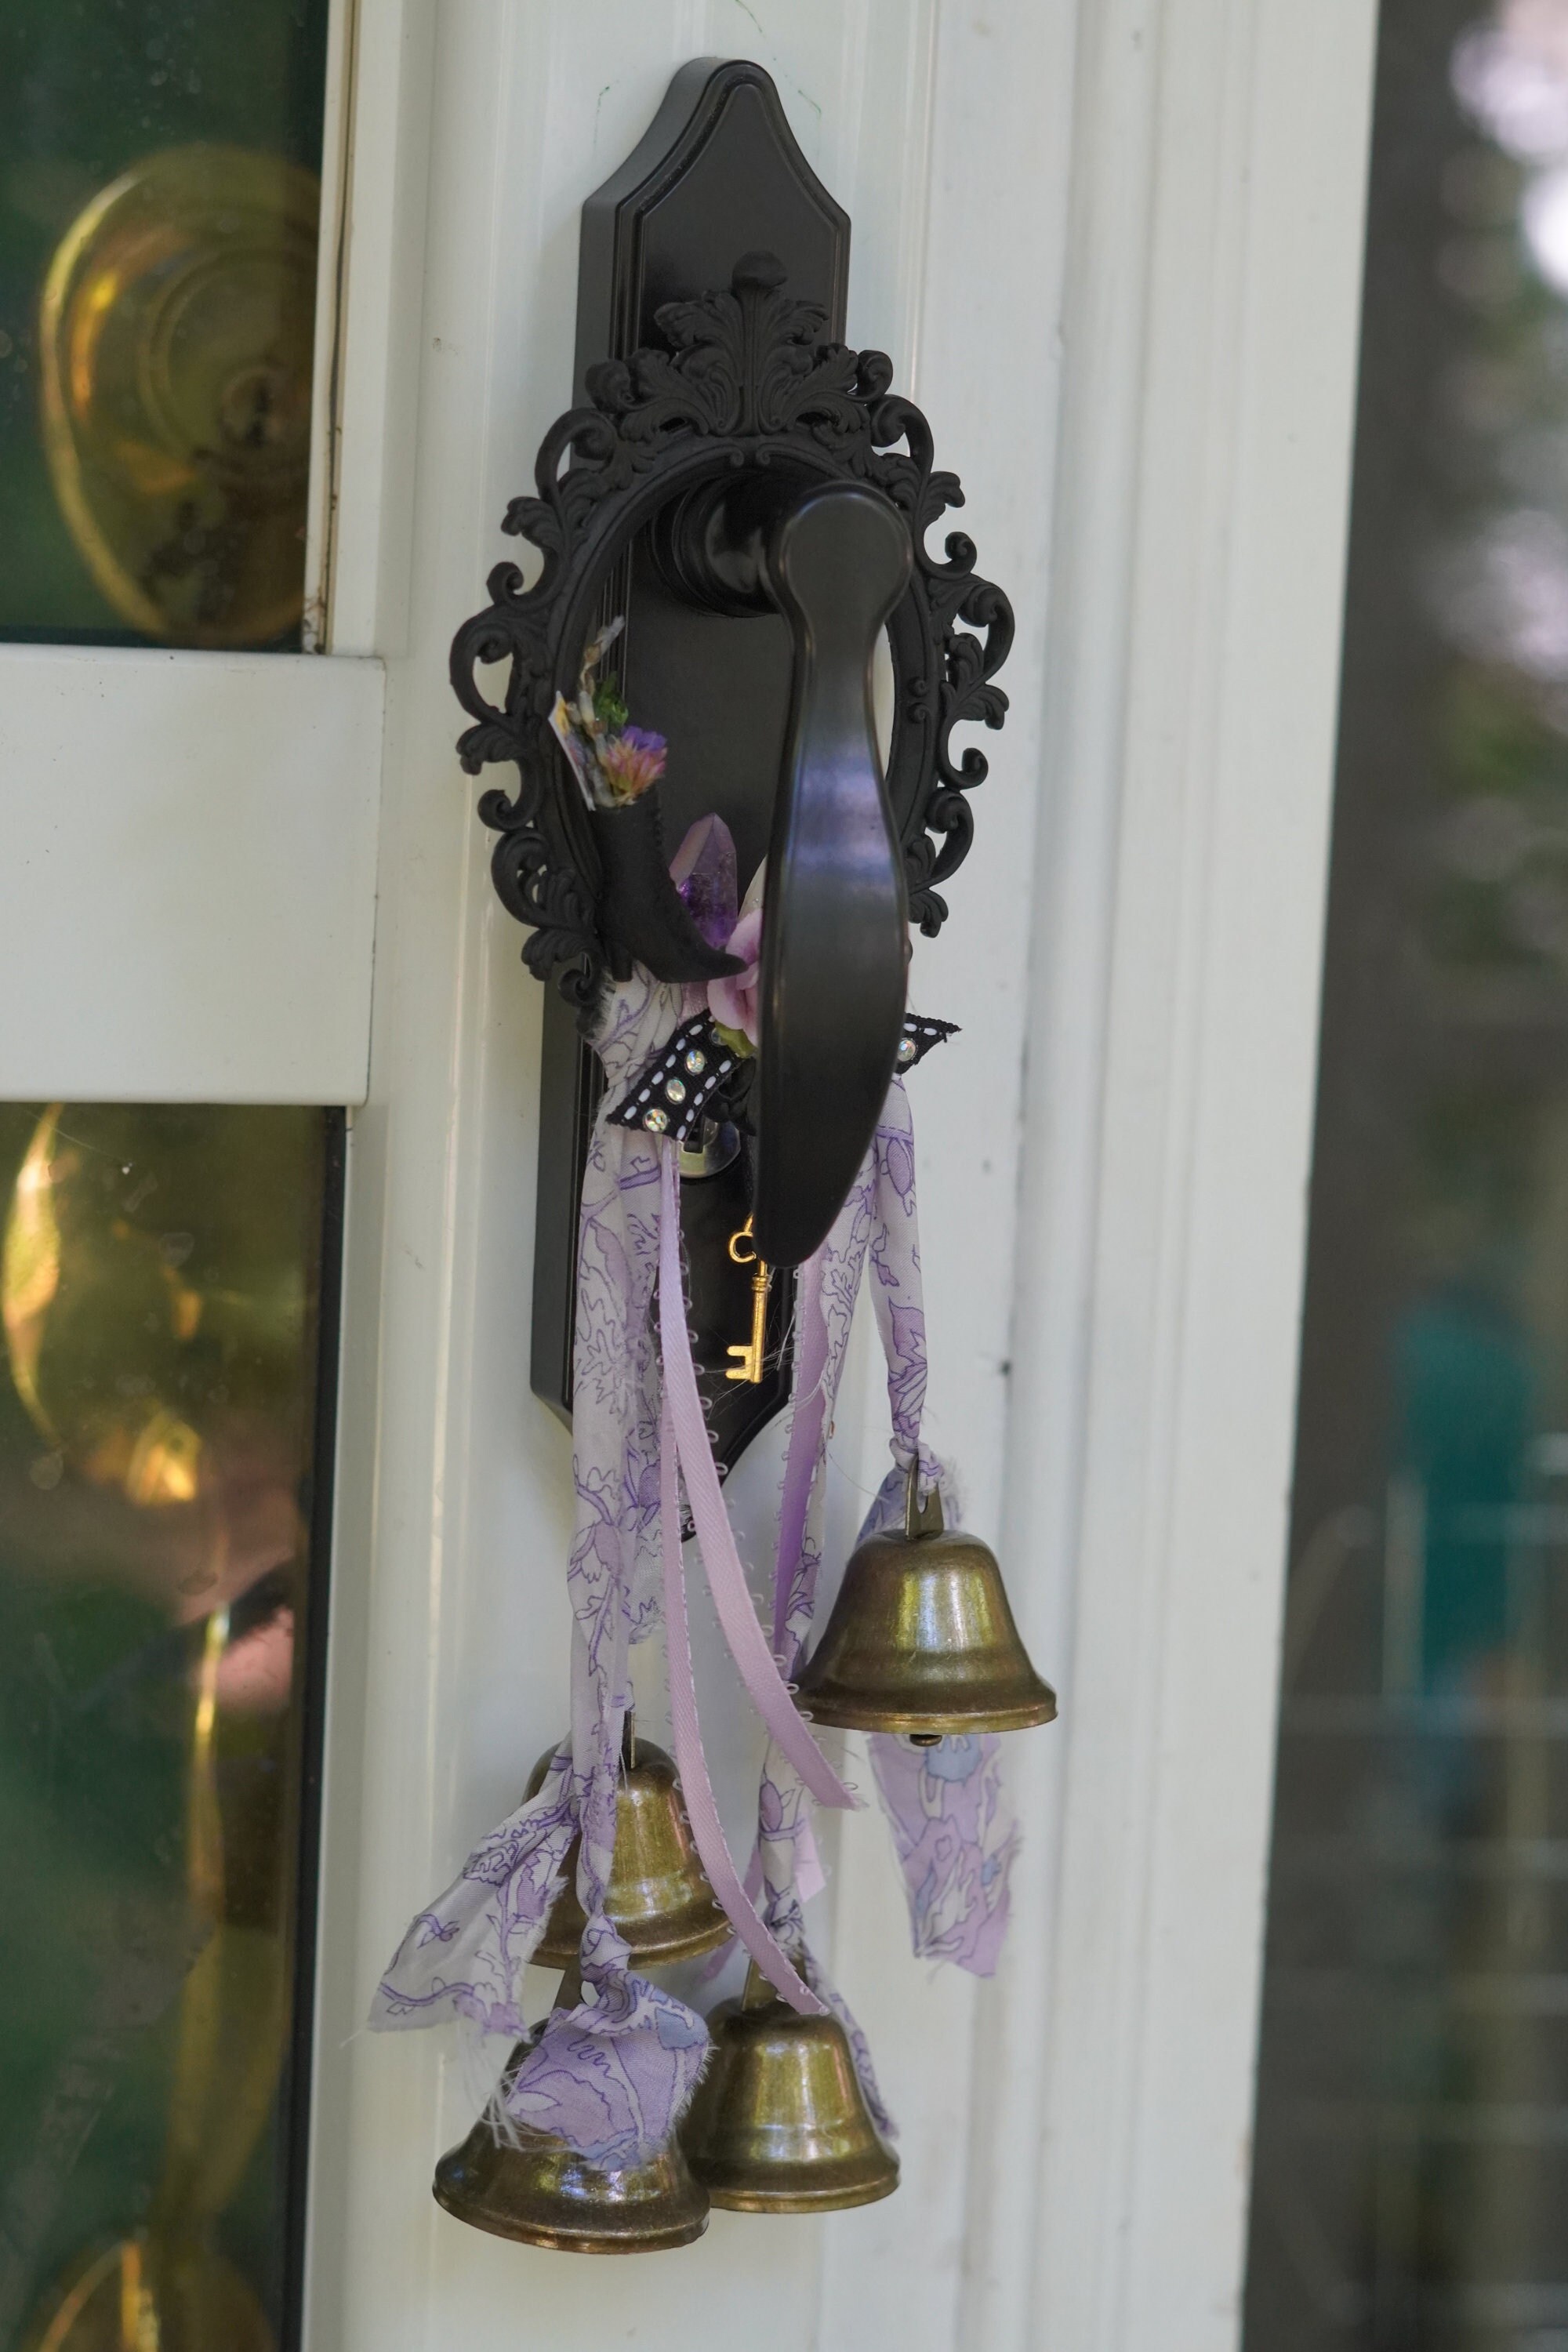 Hanging Door Knob Protection Bells, Hanging Bells for Door, Witchy Decor  Kitchen, Window Hanging Ornament, Gardening Decor